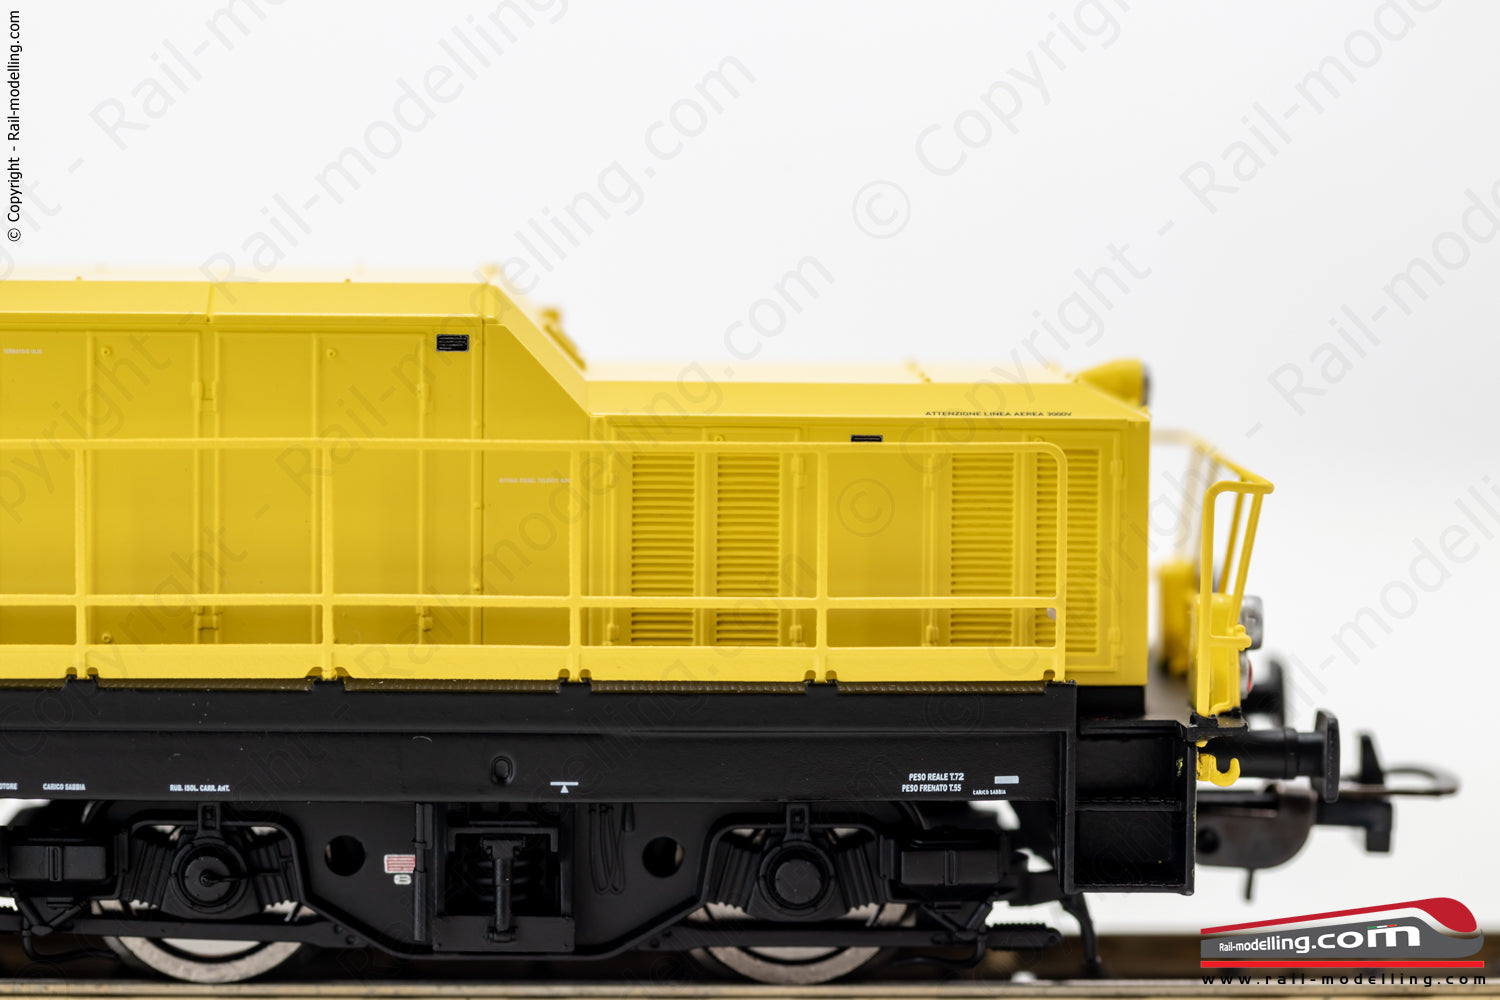 PIKO 52858 - H0 1:87 - Locomotiva diesel da manovra FS D.145 2030 RFI Ep. VI